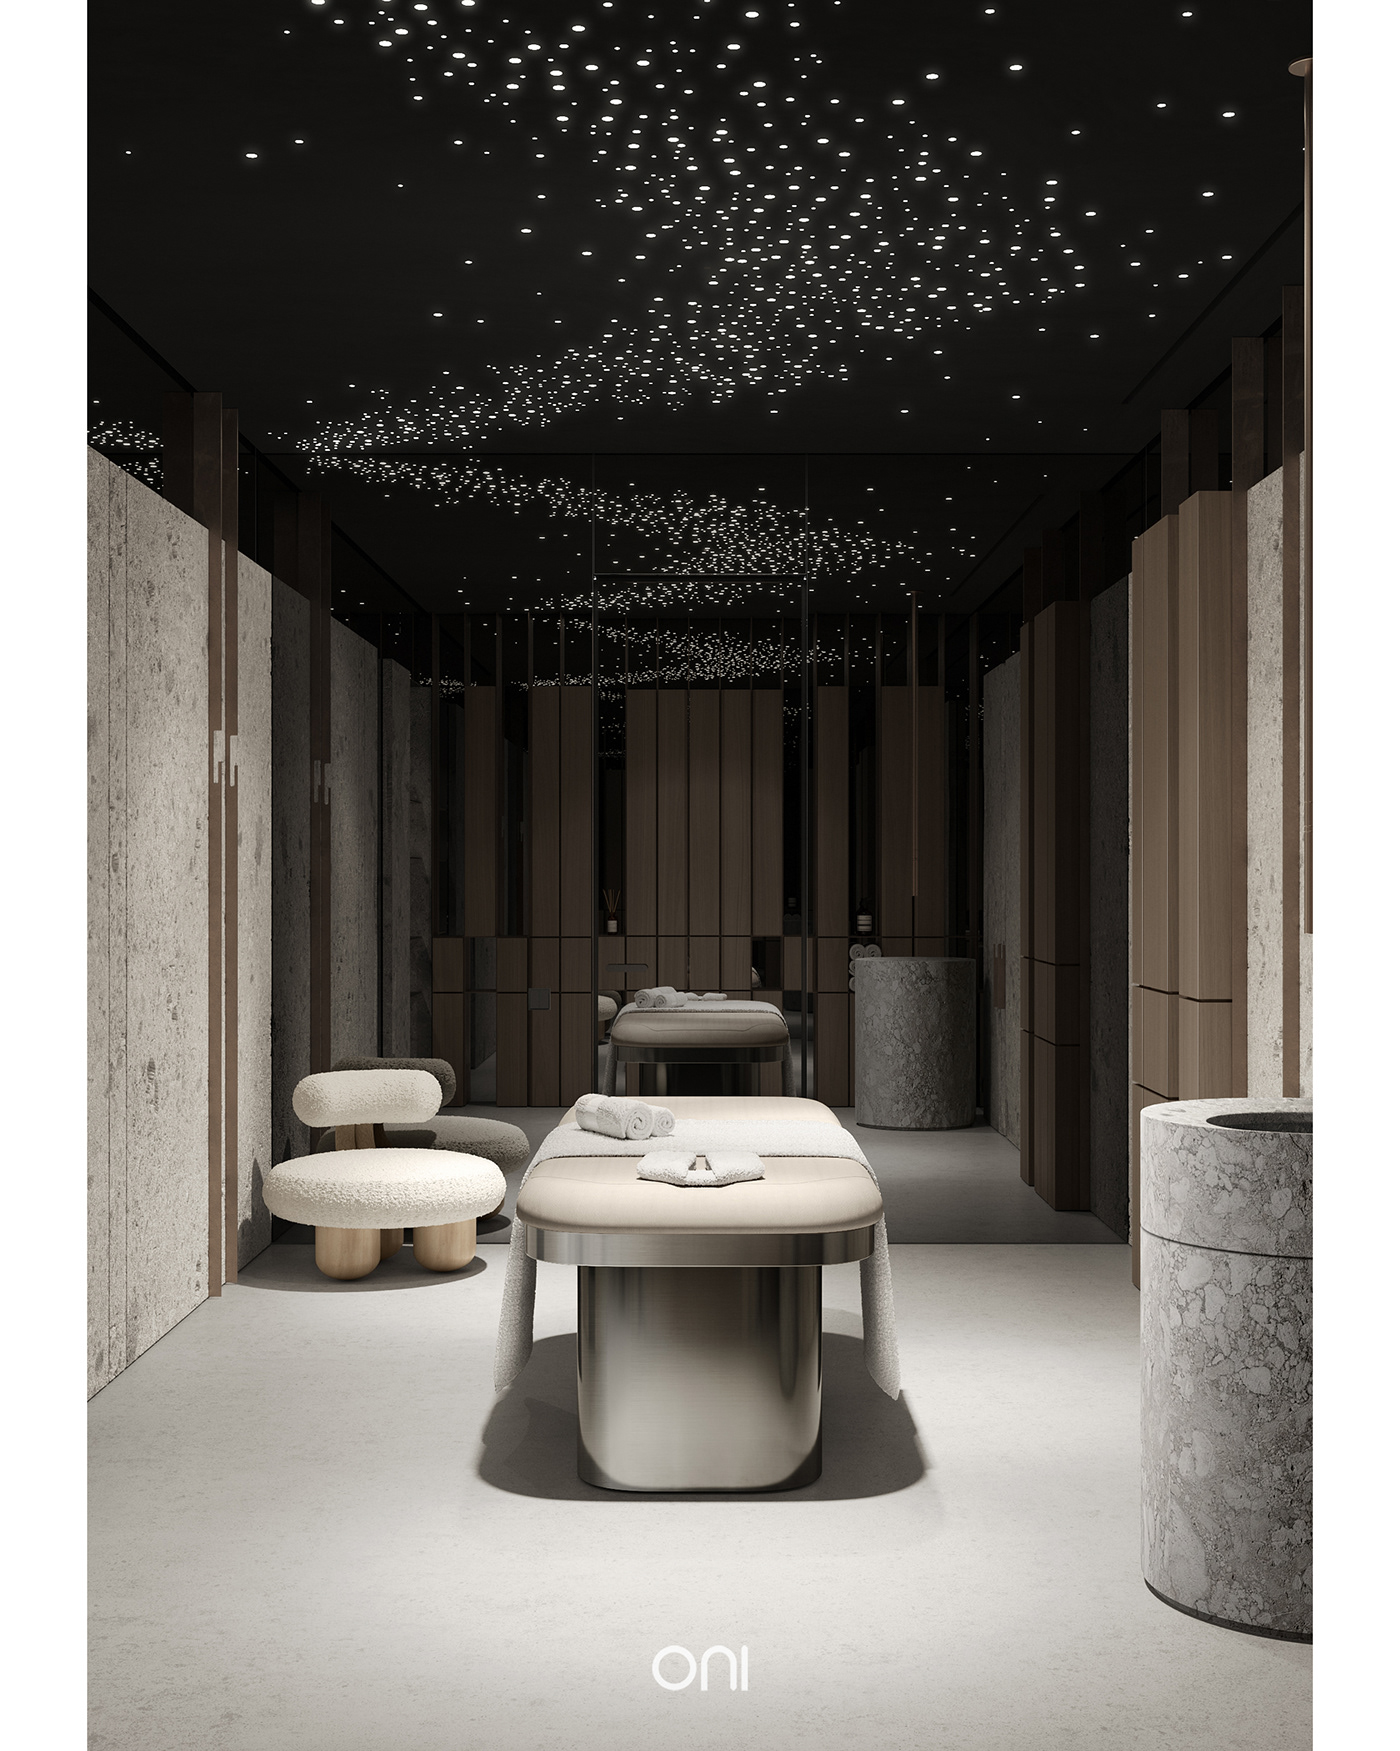 3dsmax architecture cea design design interior massage oni architects Render Spa Terrazzo visualization